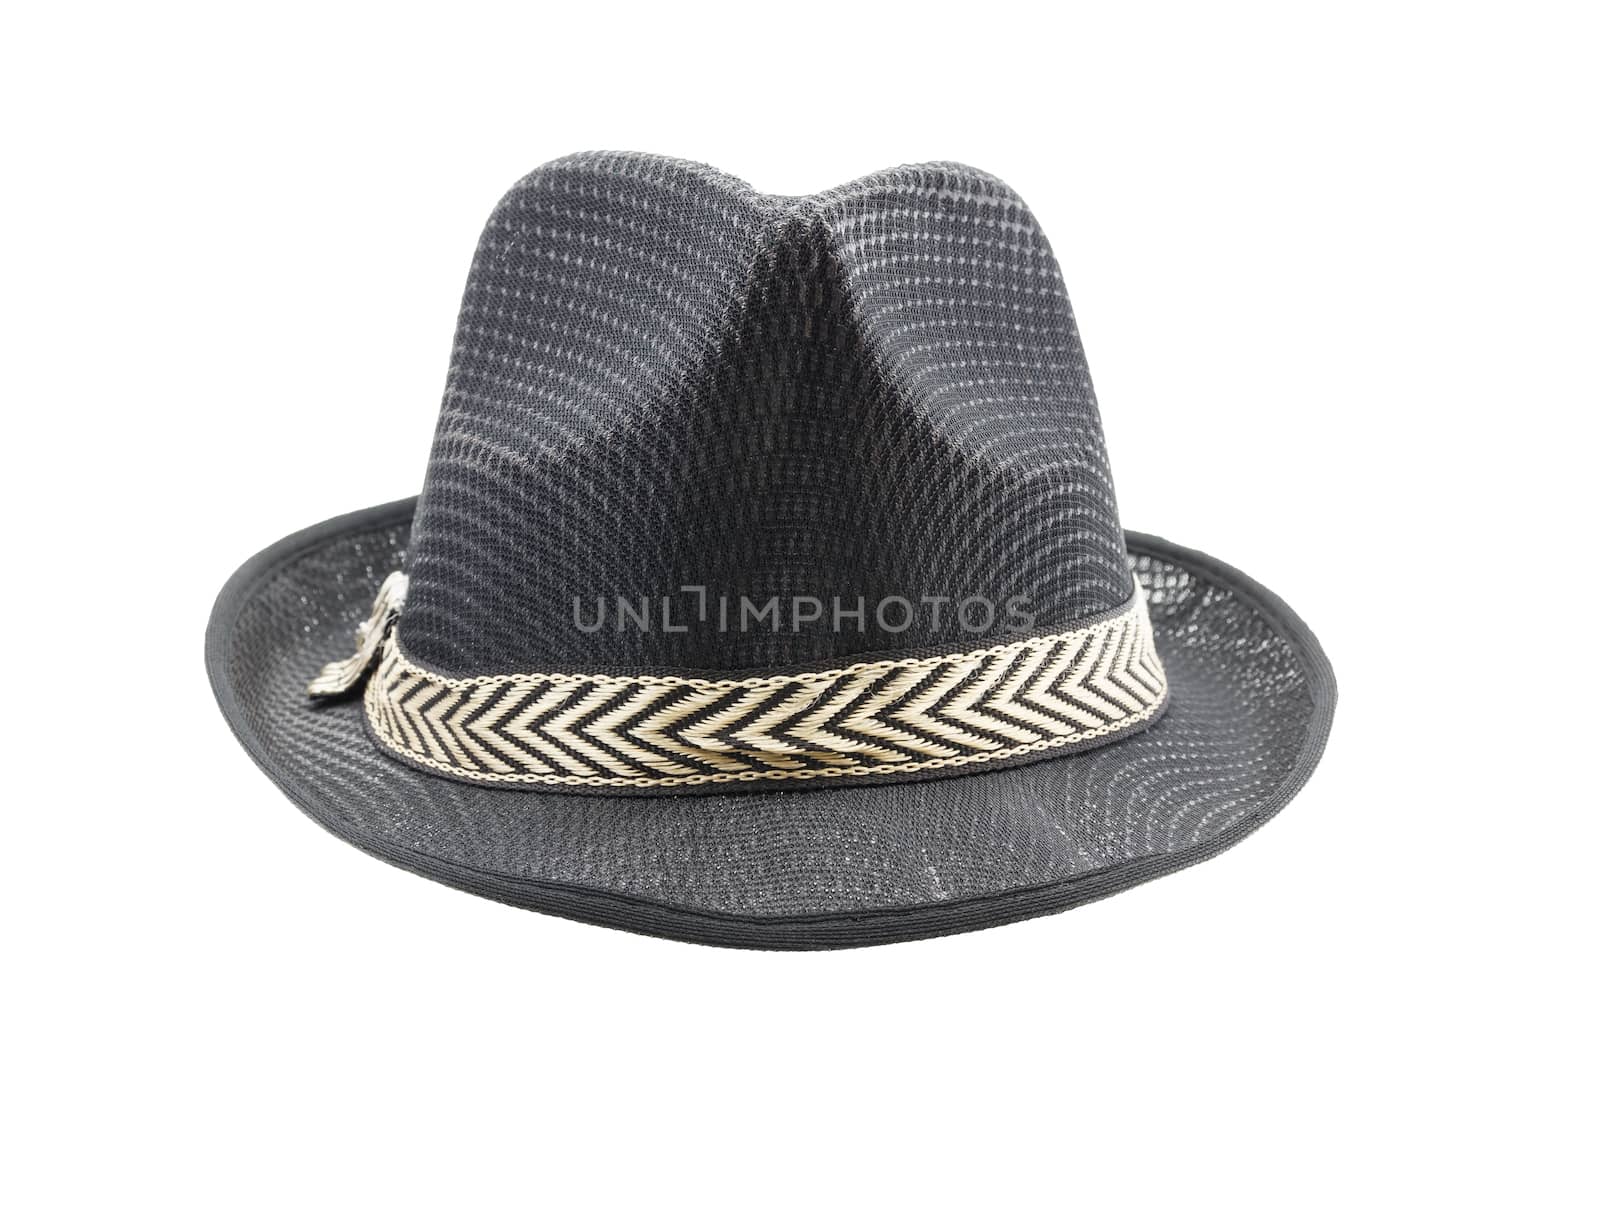 Black fedora hat isolated on white background